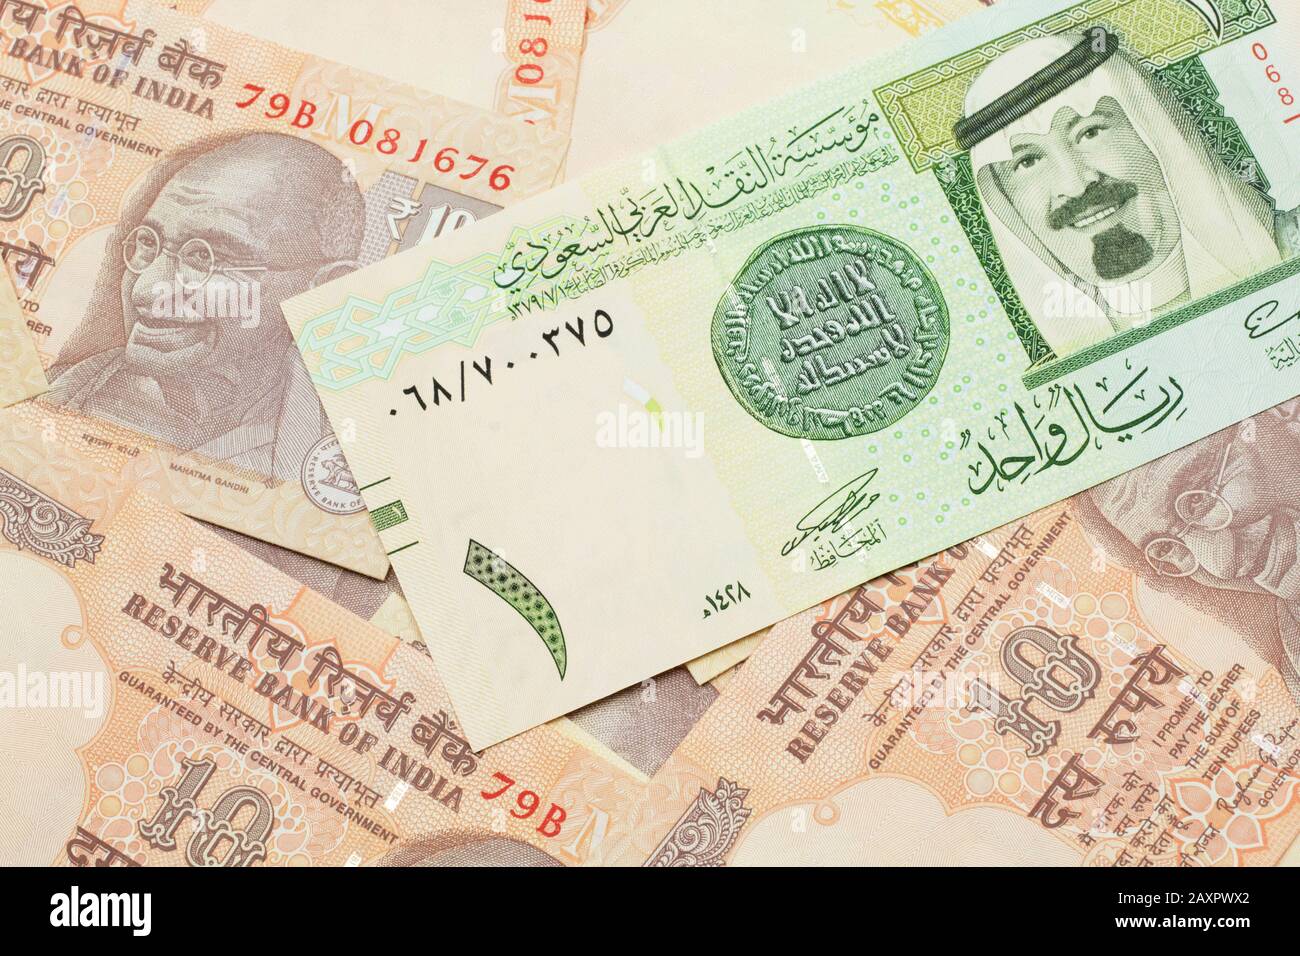 indian currency saudi riyal , saudi currency